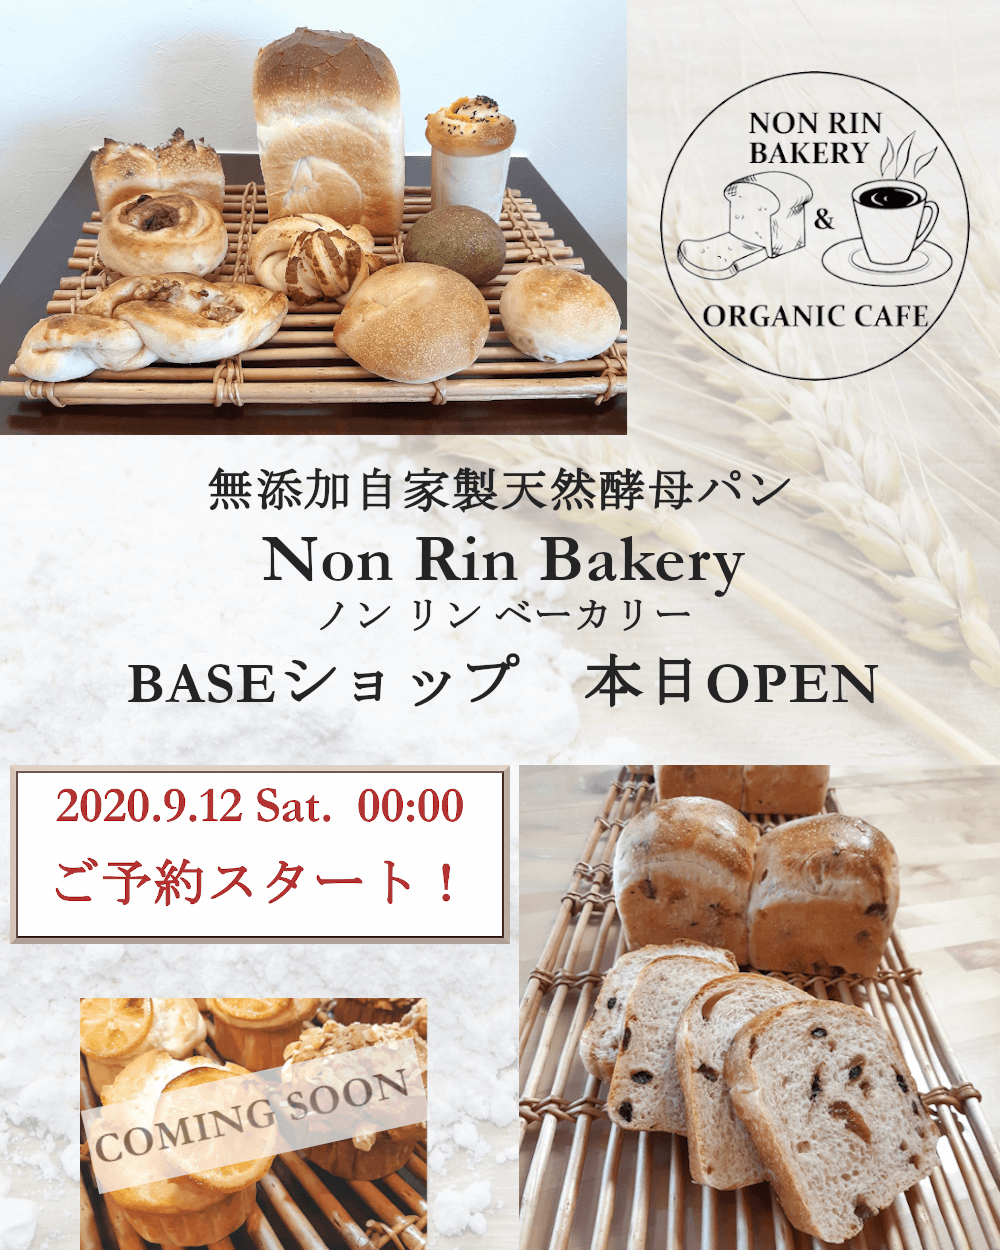 Non Rin Bakery